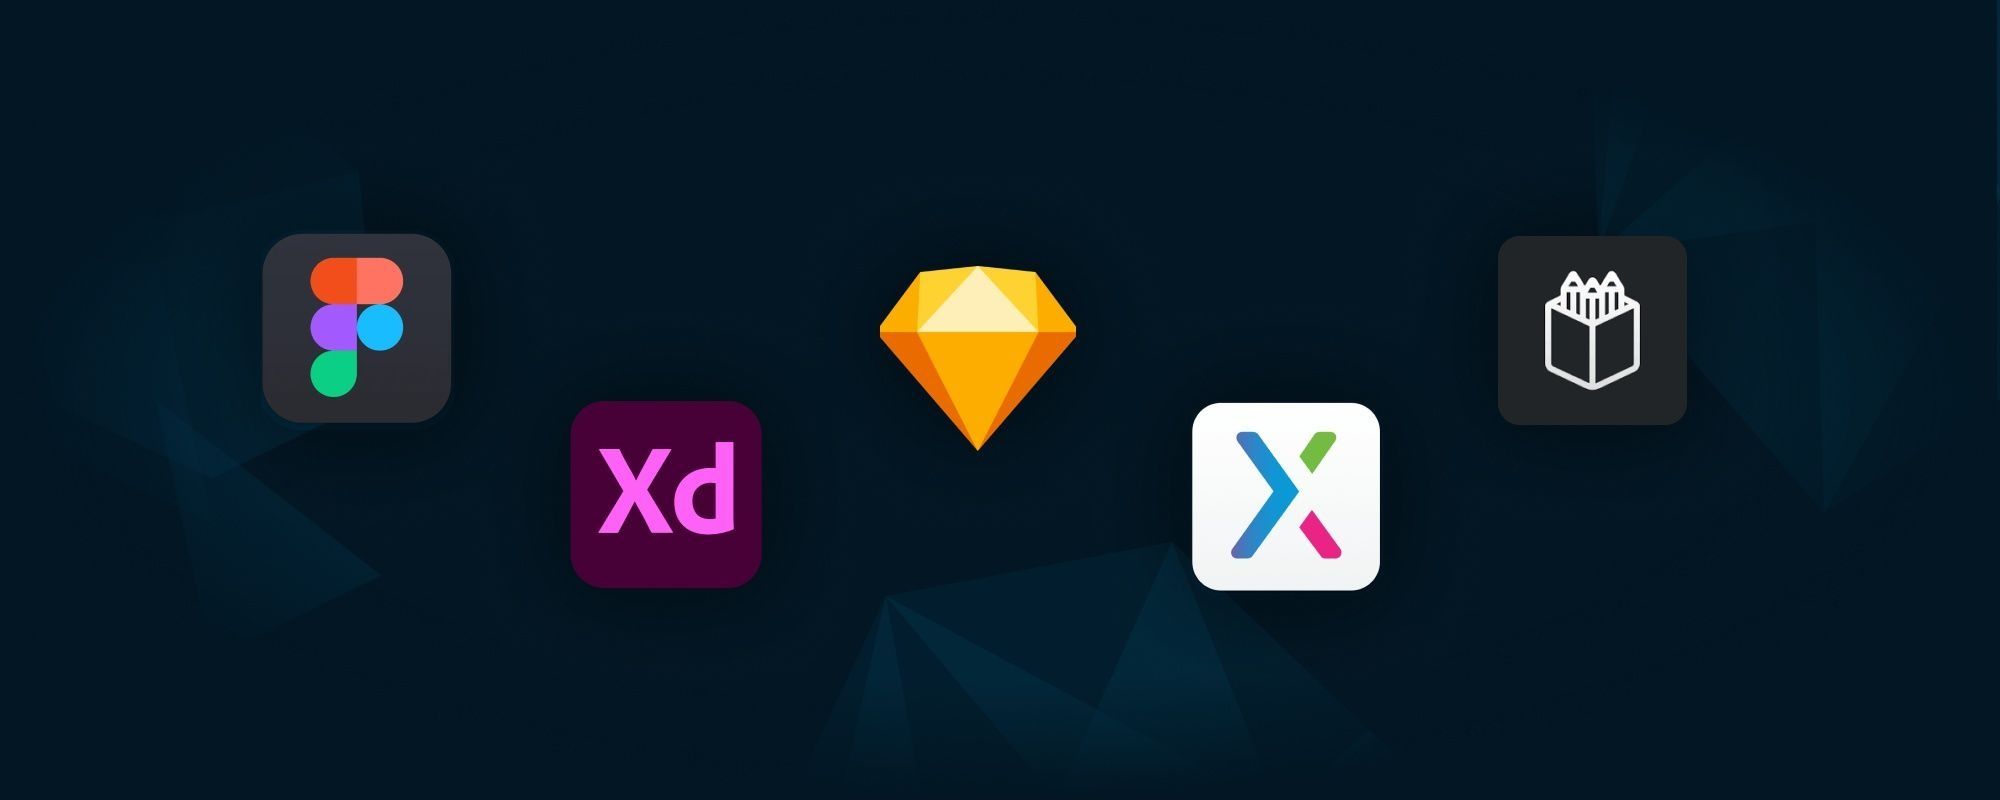 Ansammlung der Design-Tool-Logos als Bilder auf dunklem Hintergrund (von links: Figma, XD, Sketch, Axure, Penpot)